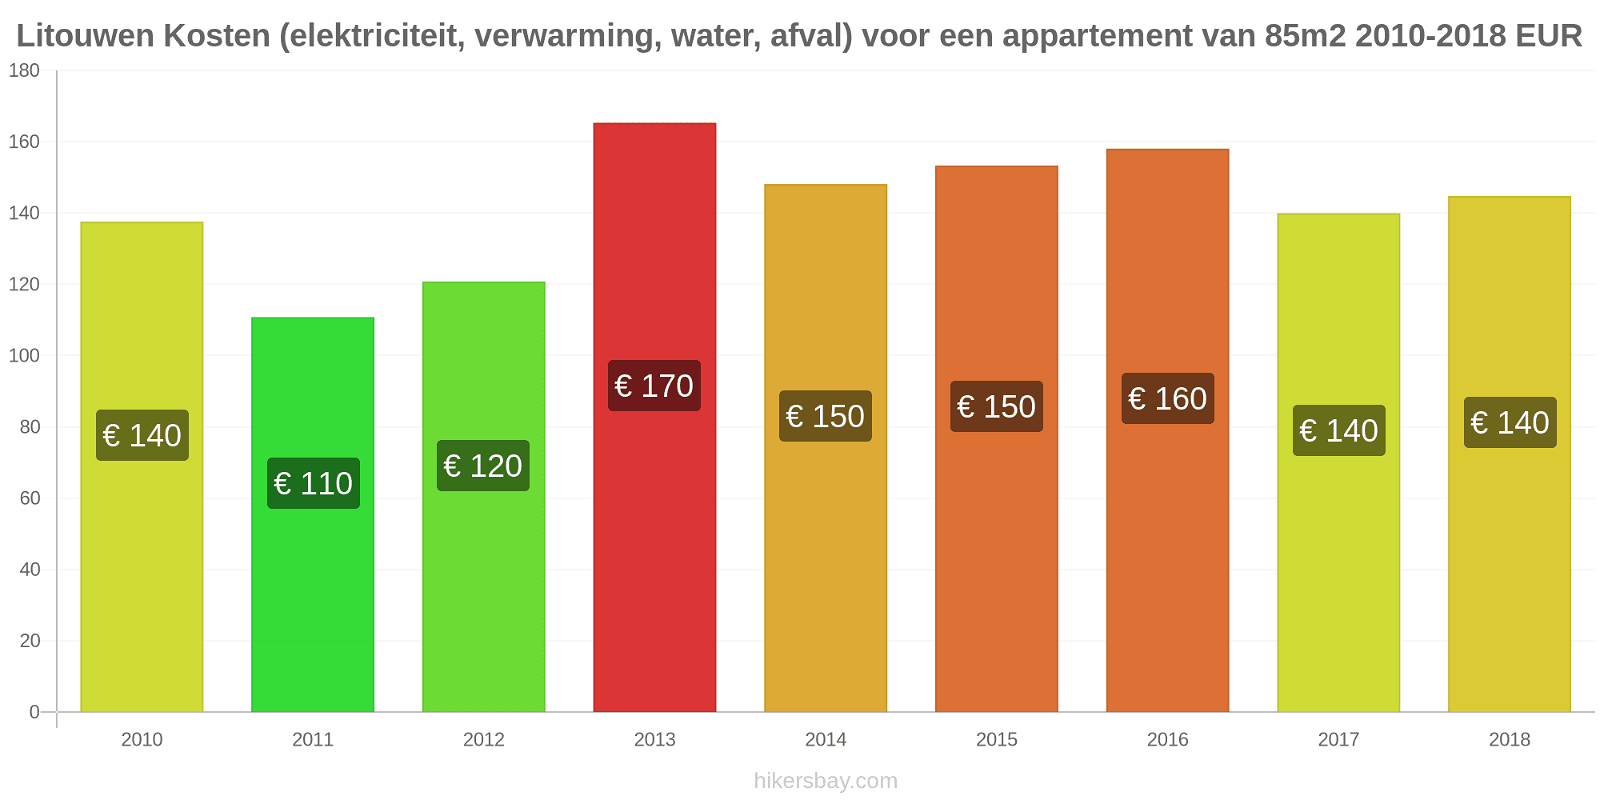 Litouwen prijswijzigingen Kosten (elektriciteit, verwarming, water, vuilnis) voor een appartement van 85m2 hikersbay.com